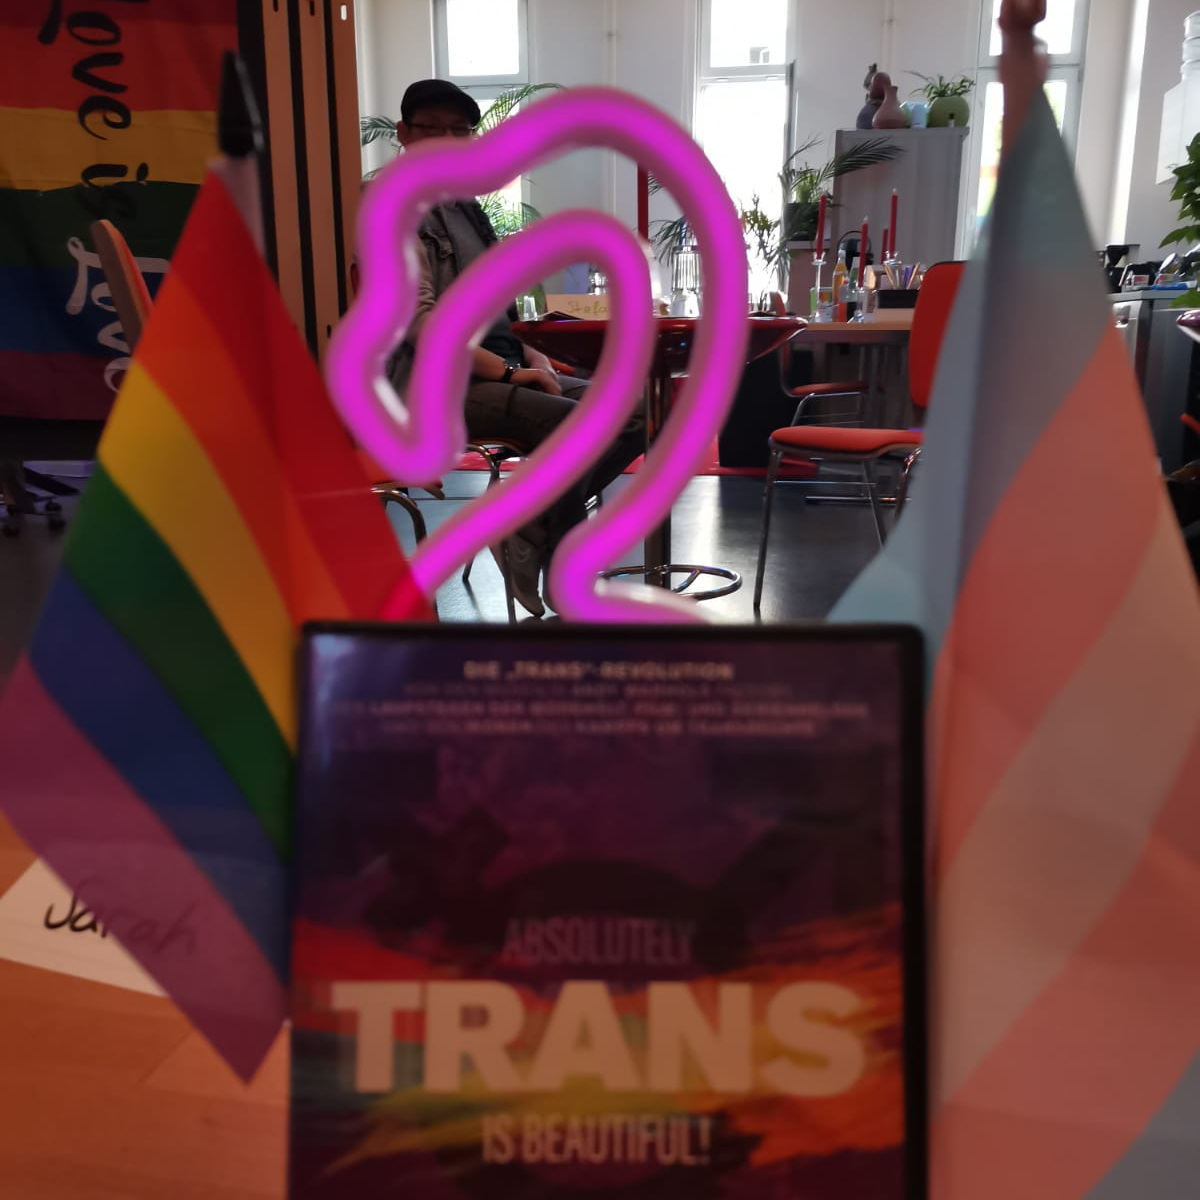 Trans*communitytreff Niederlausitz